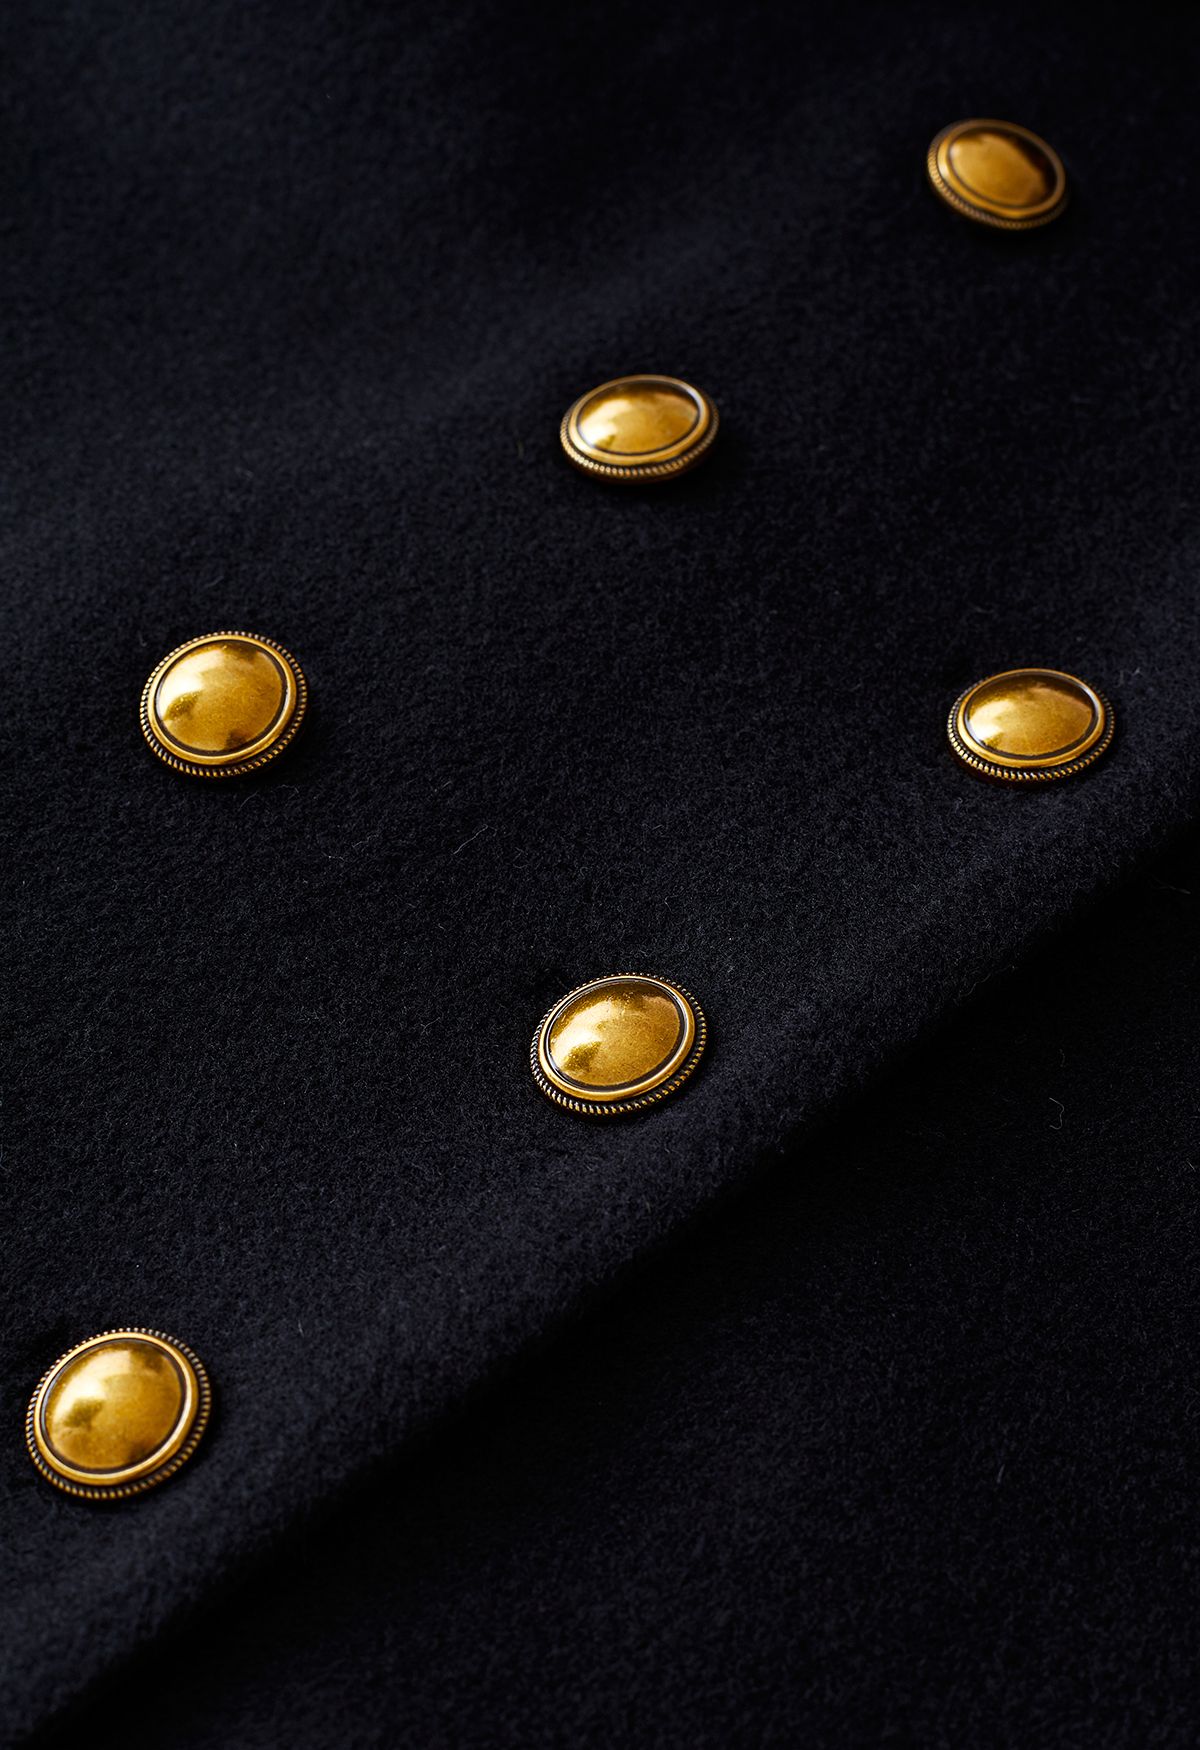 Abrigo de mezcla de lana de corte recto con doble botonadura en negro